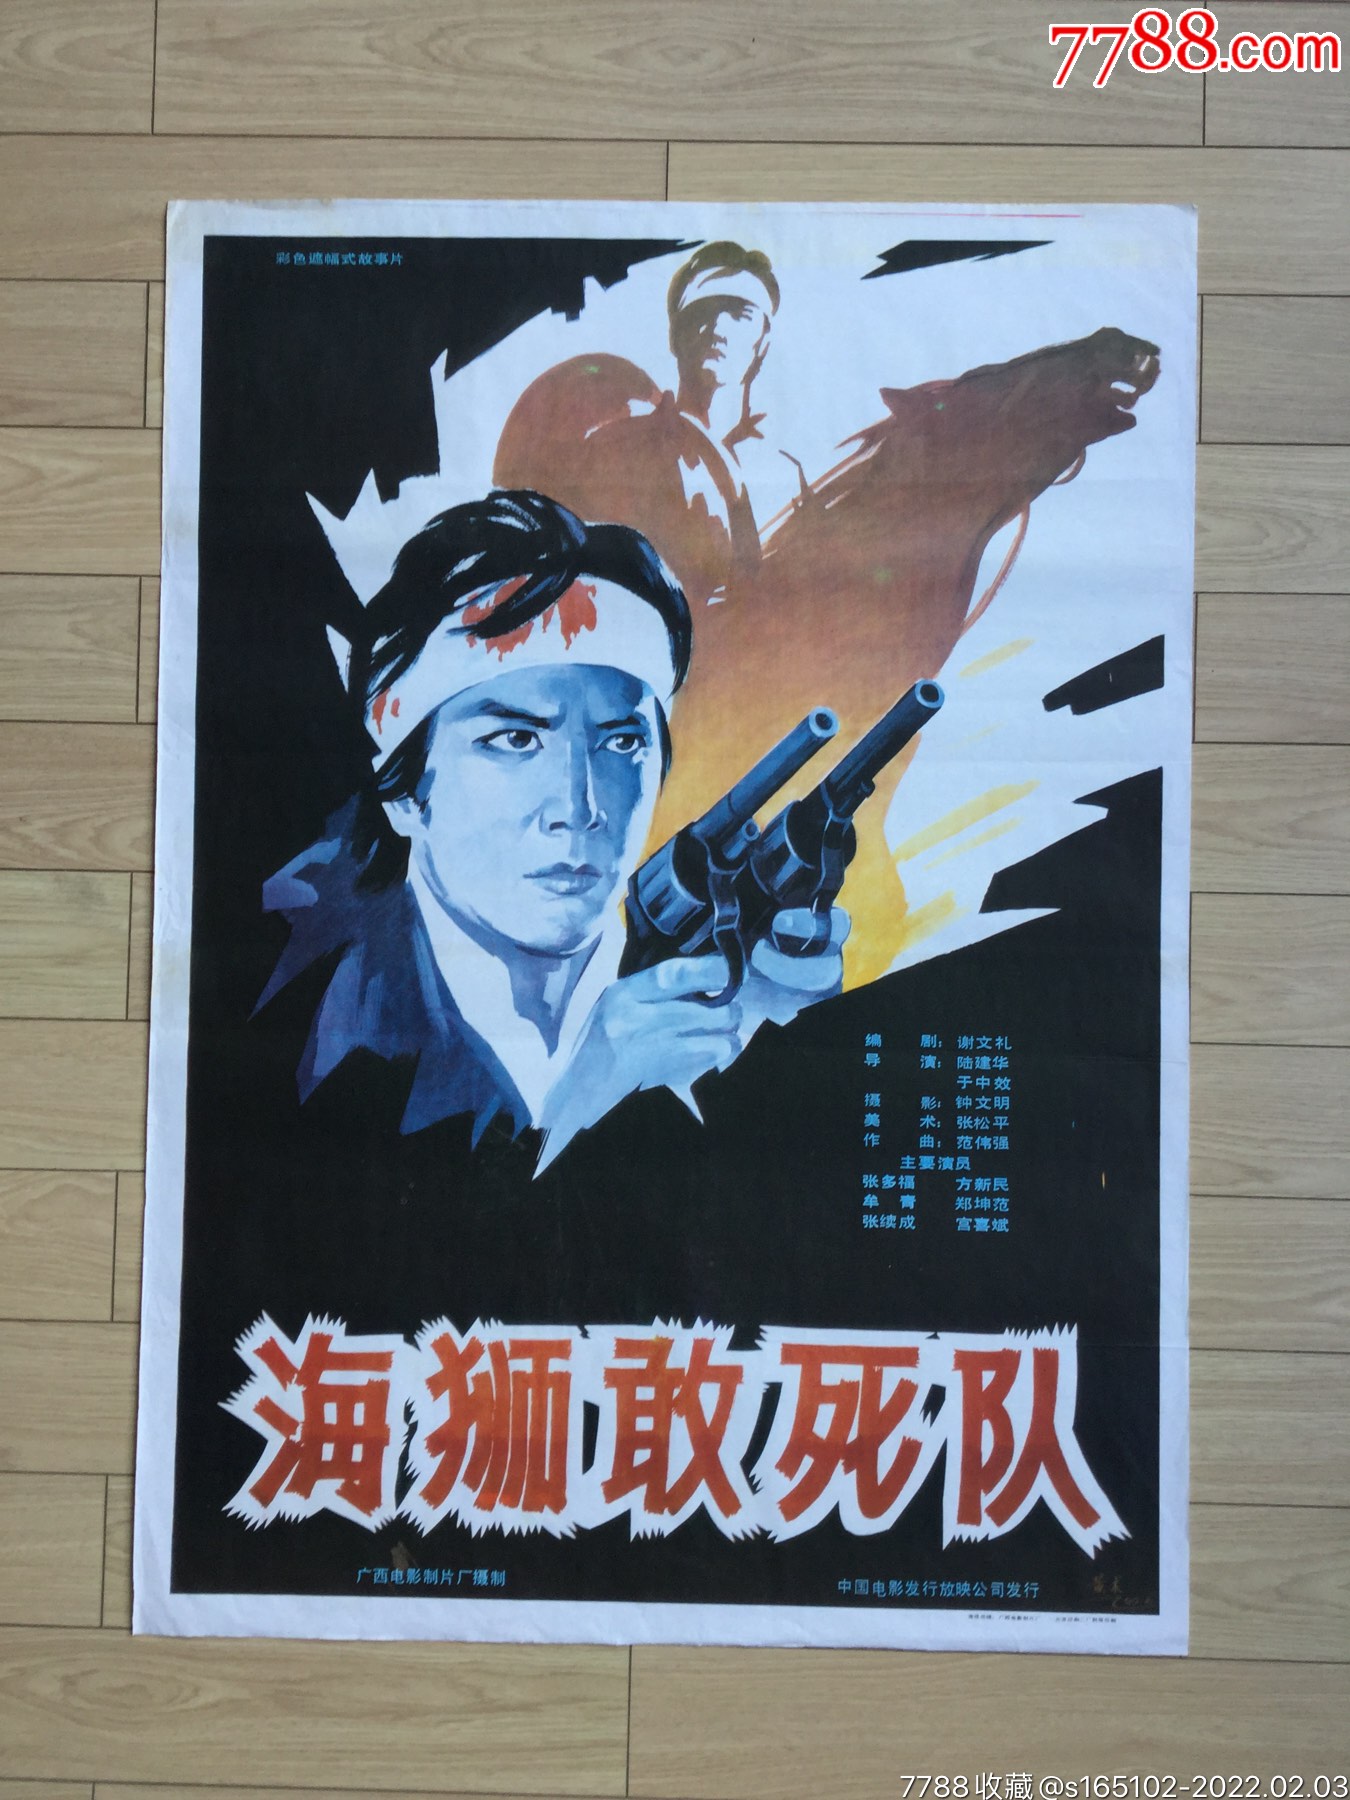 海狮敢死队(抗战)-价格:115元-se85184833-电影海报